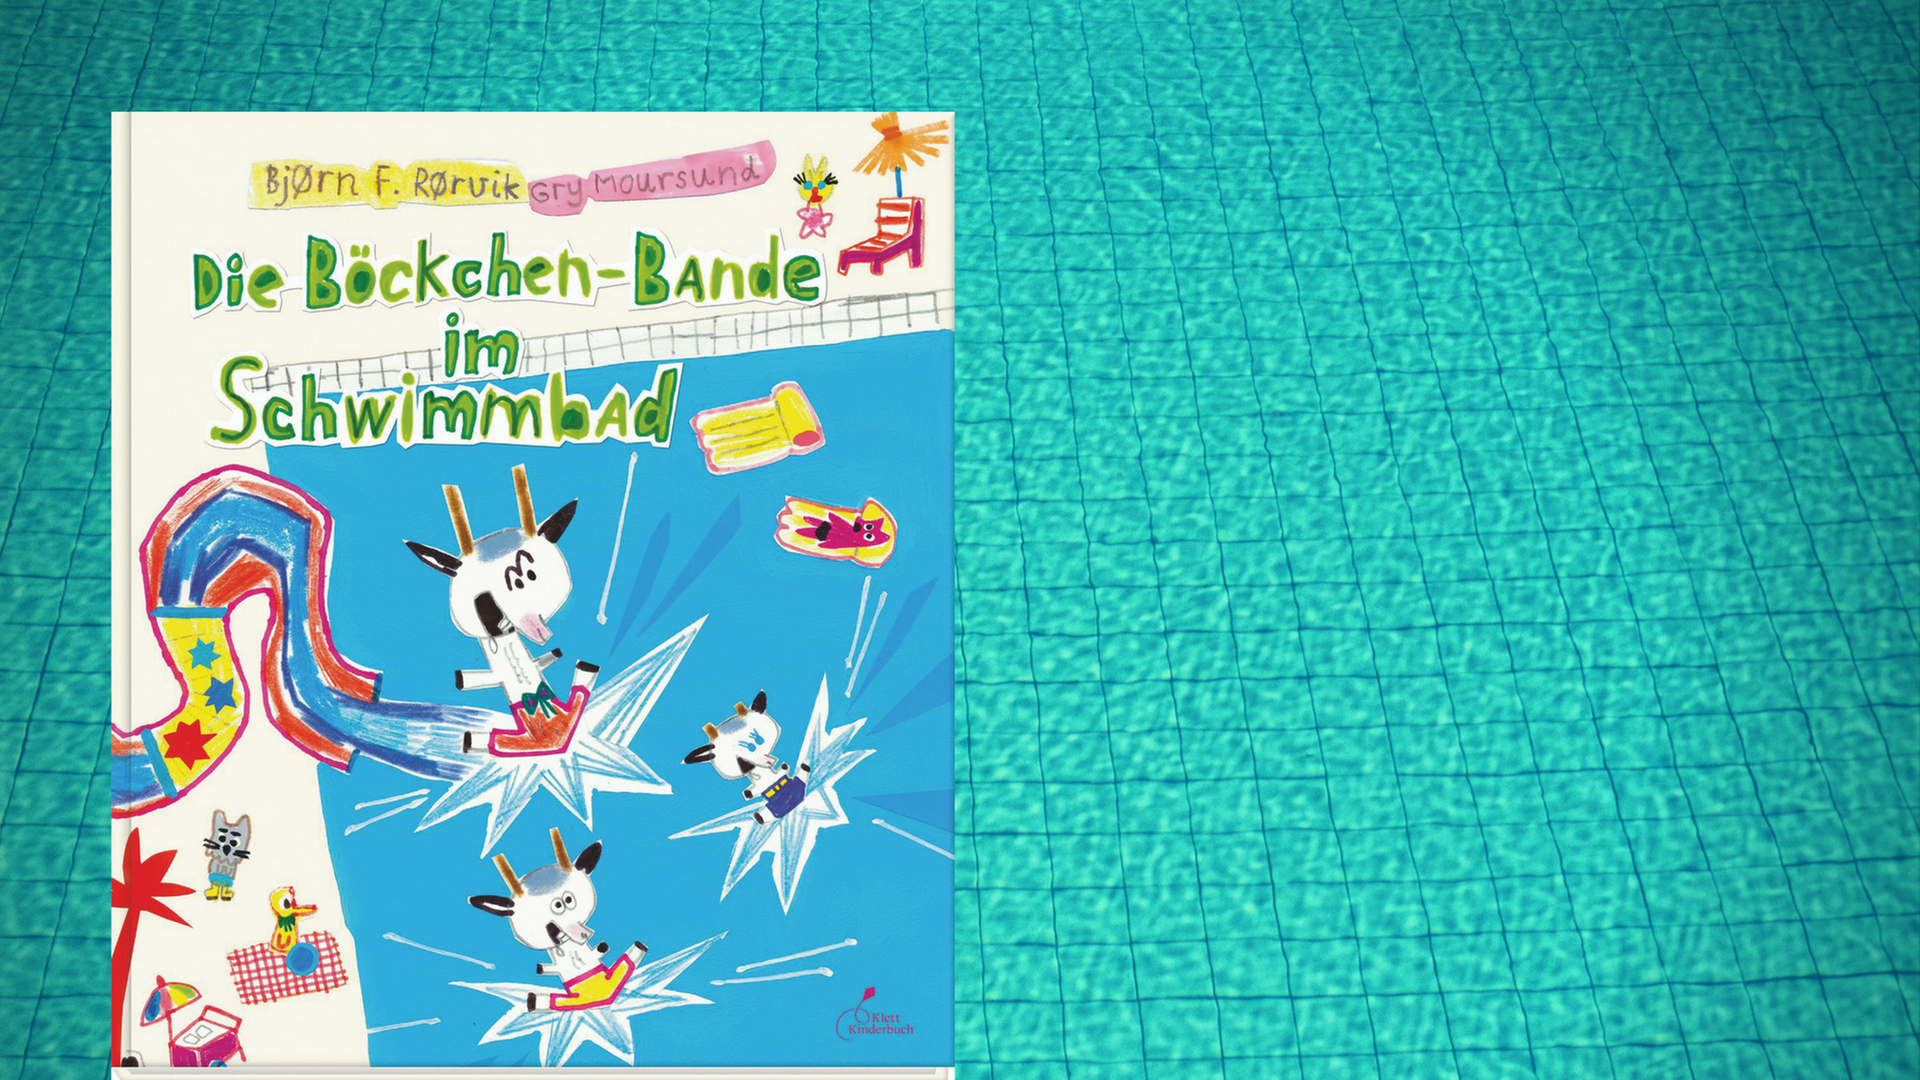 Buchcover von Björn F. Rörviks und Gry Moursunds "Die Böckchen-Bande im Schwimmbad".